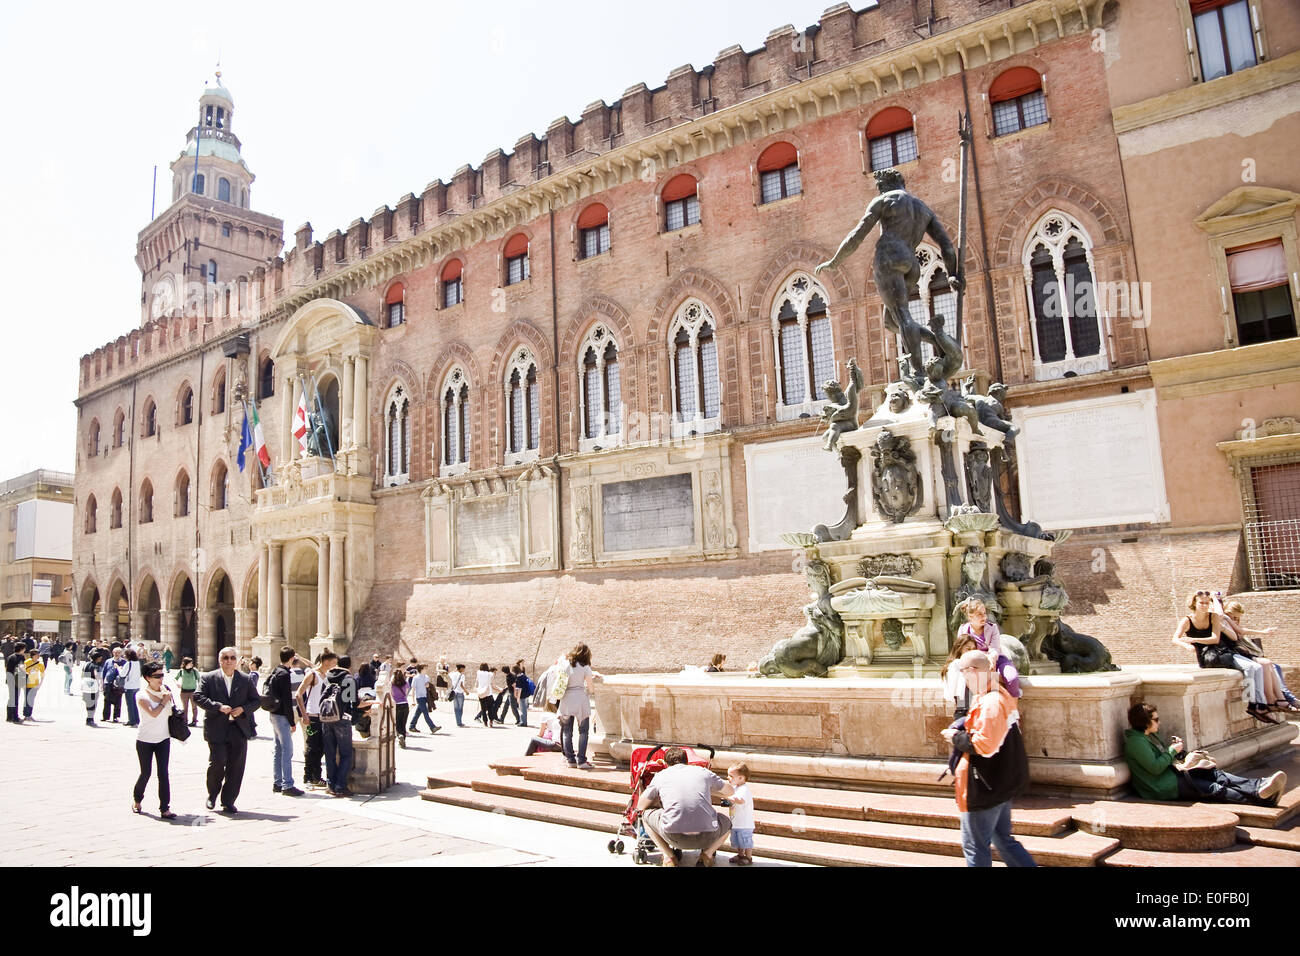 Palazzo d'Accursio (aka Palazzo Comunale, Town Hall) and Fountain of Neptune on Piazza Maggiore, Bologna Stock Photo